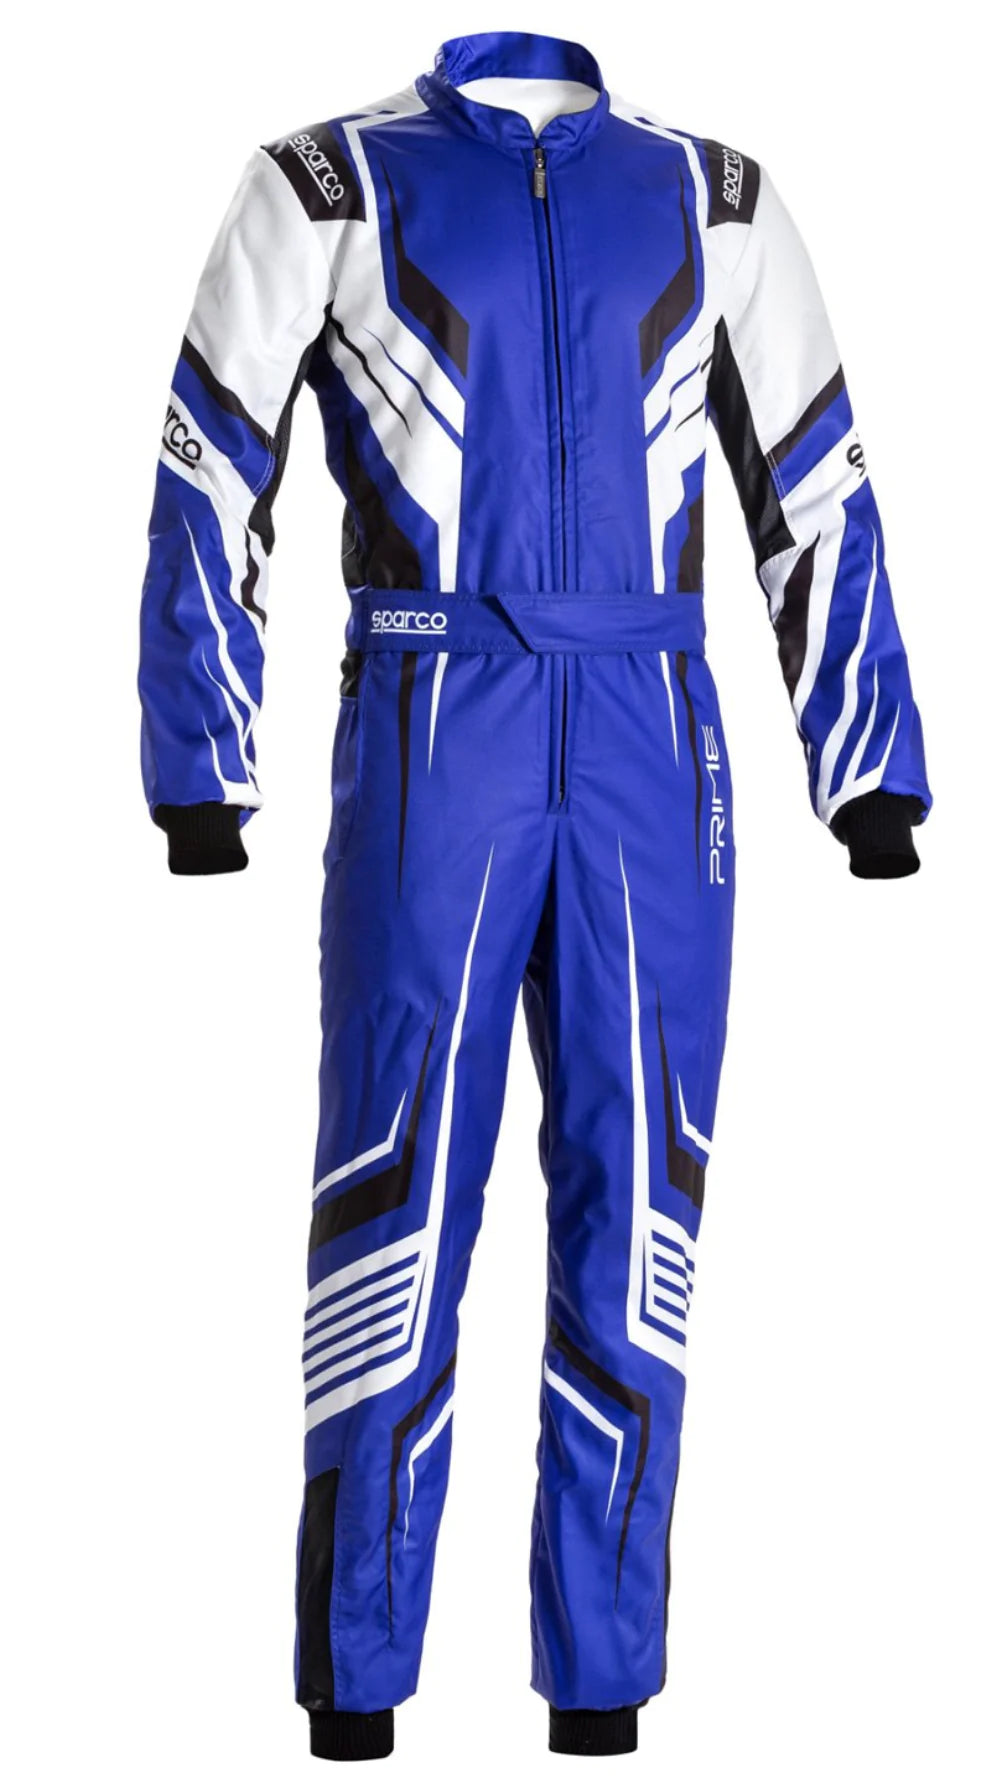 Sparco Prime-K Kart Racing Suit